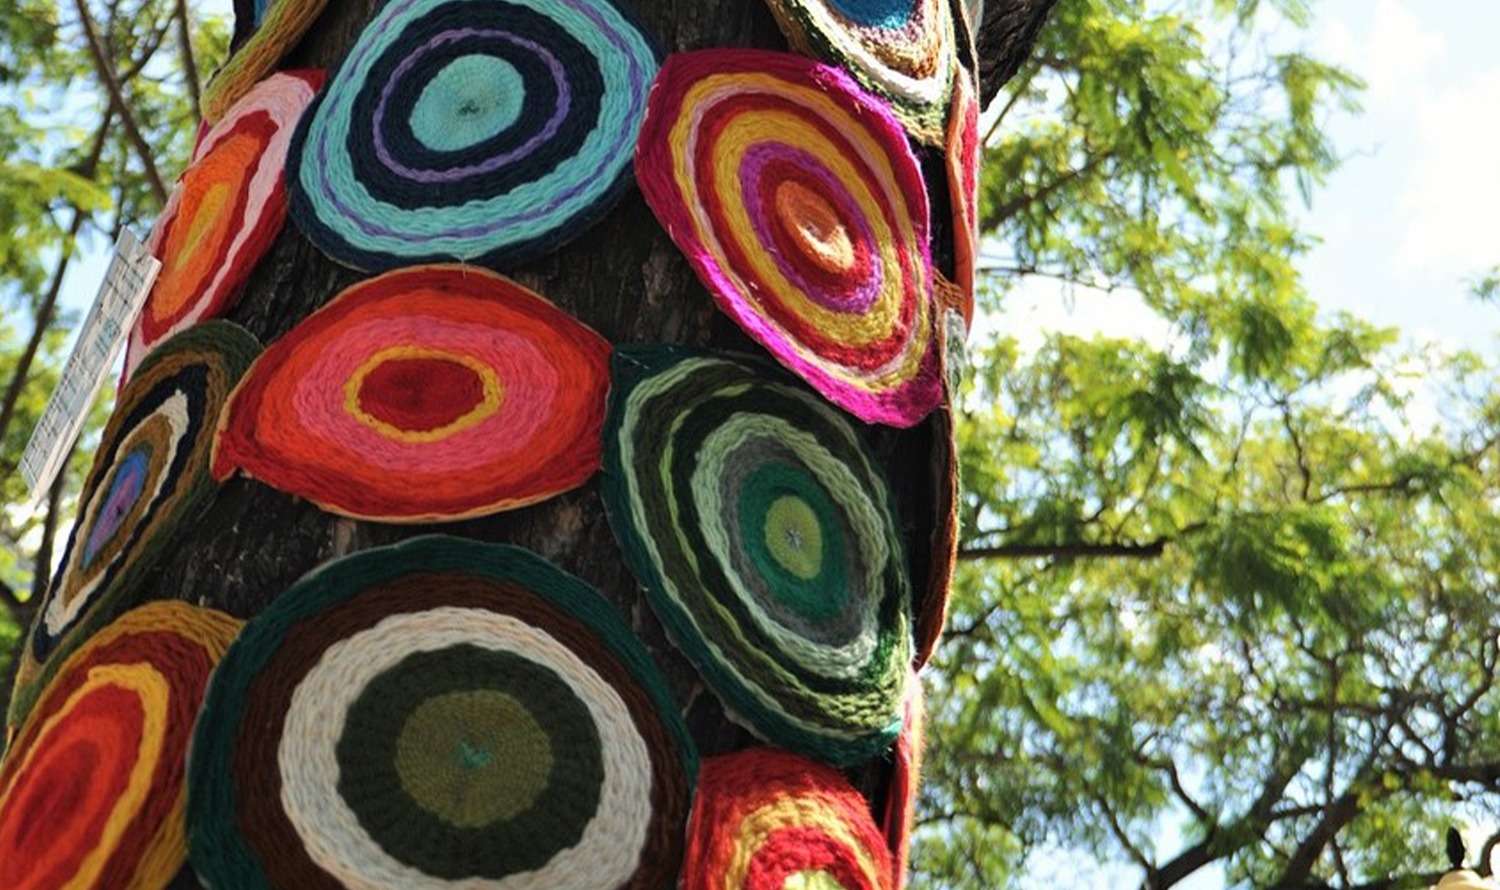 العديد من وسائد المقاعد المستديرة الملونة محلية الصنع معلقة على شجرة.